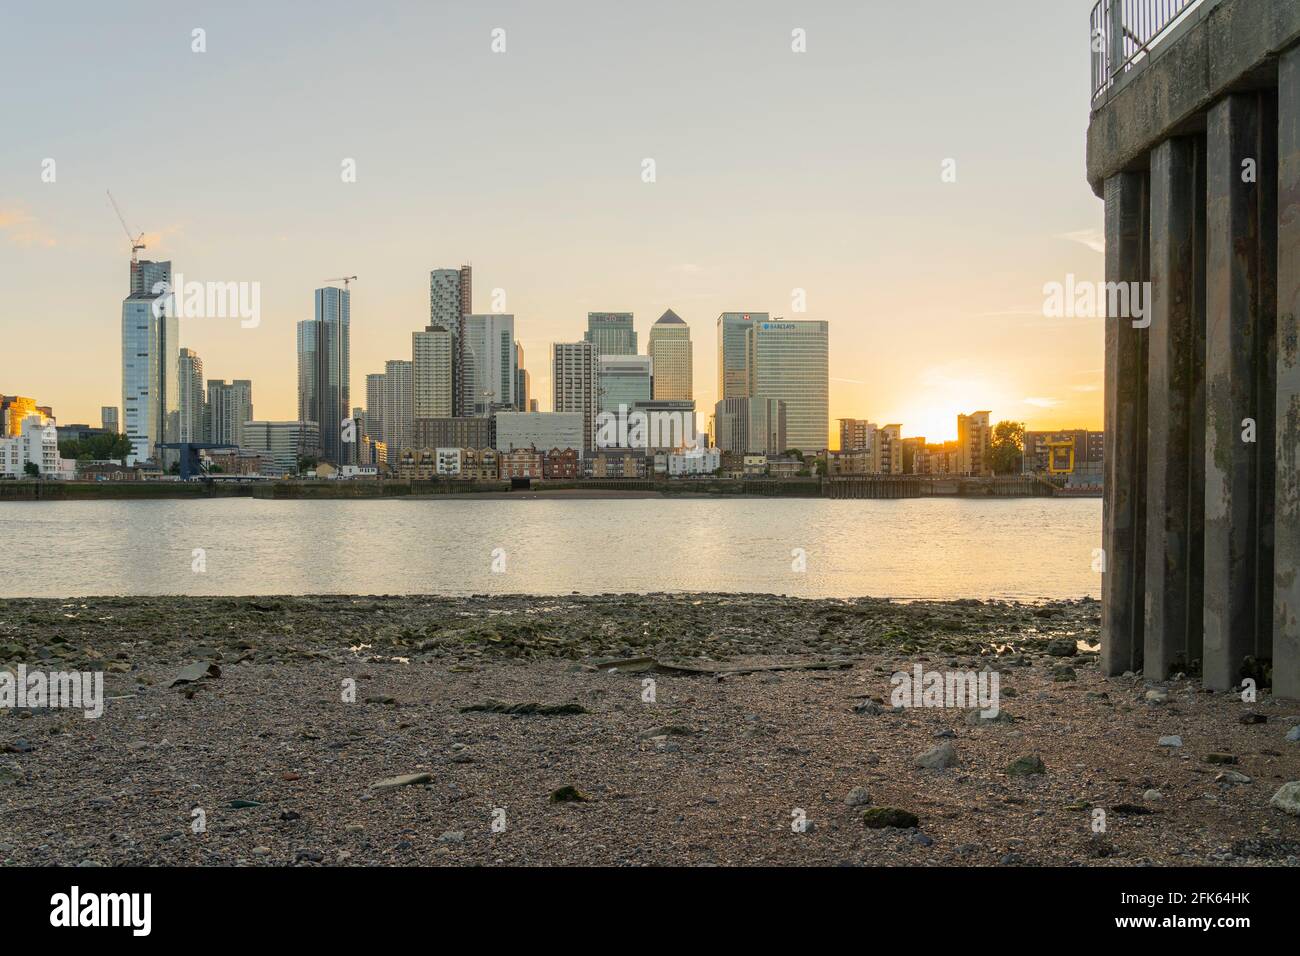 Julio de 2020. Londres. Vista de Canary Wharf y el río Támesis, Londres, Inglaterra Foto de stock